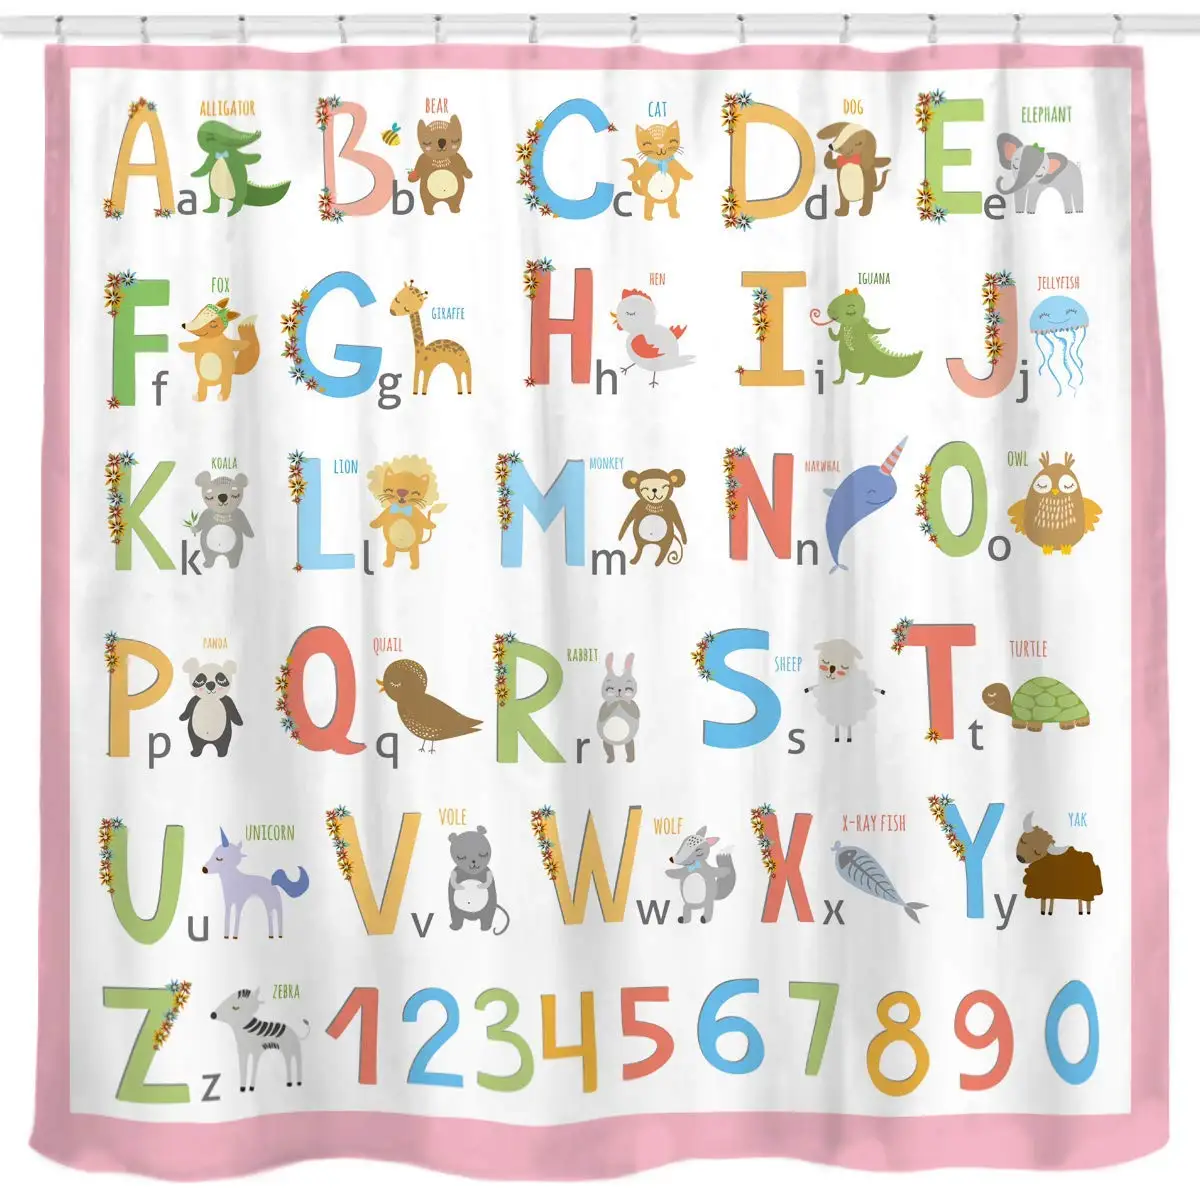 Алфавит занавеска для душа для детей обучающий инструмент большой от A до Z плакат гобелен плесени стойкий полиэстер занавеска для ванной